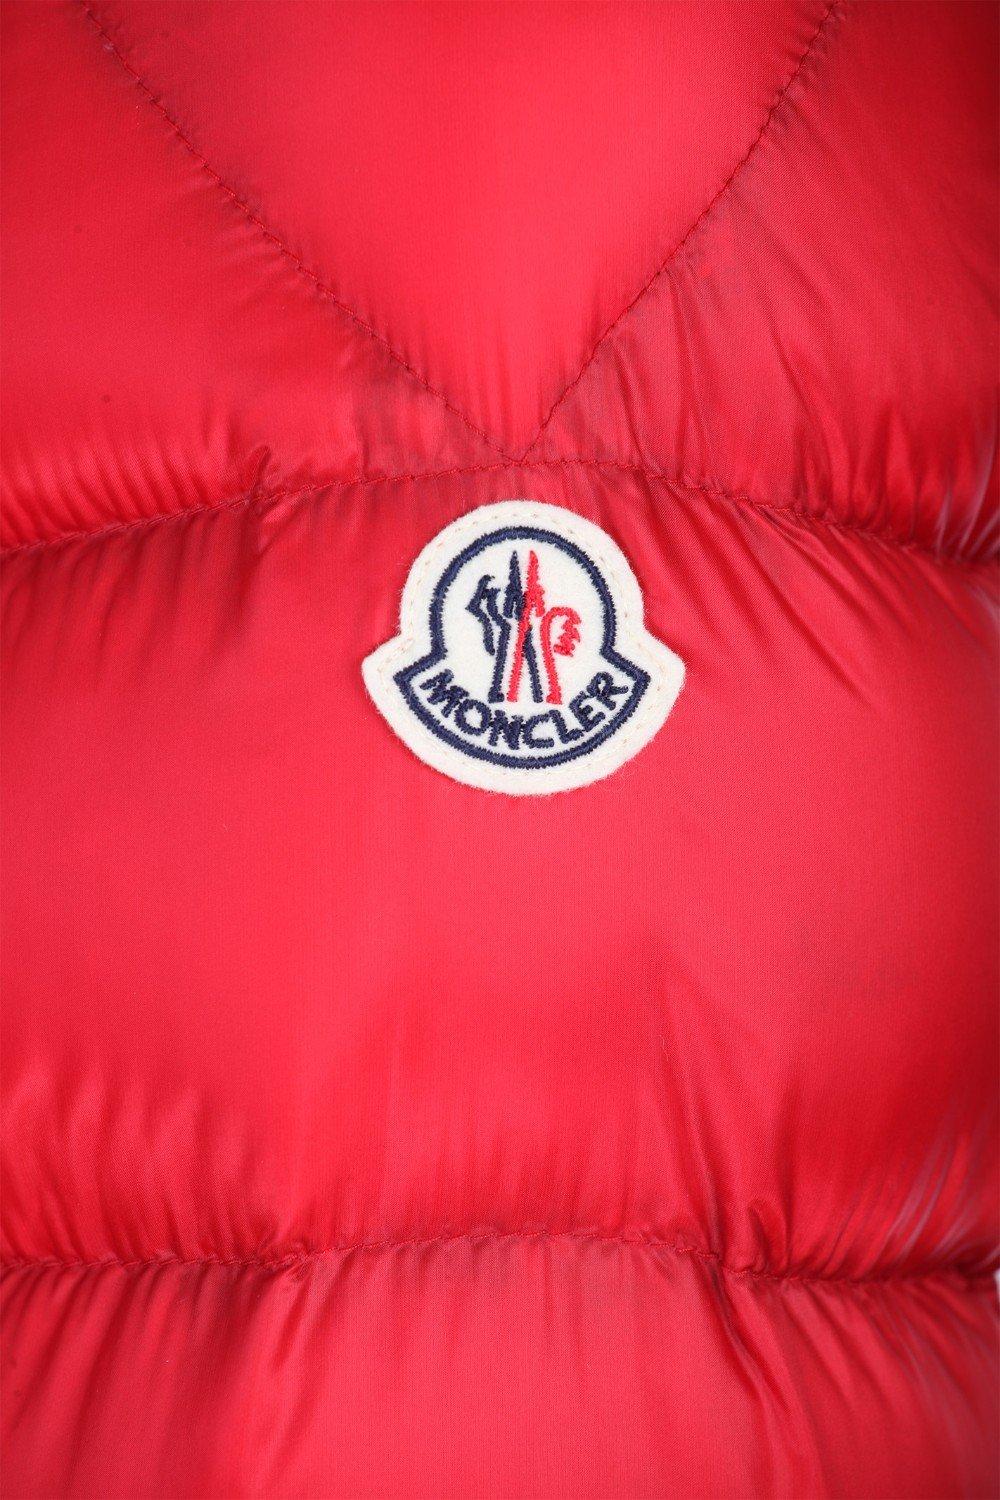 Moncler Goose Piriac Big Logo Down Jacket in Red for Men - Lyst